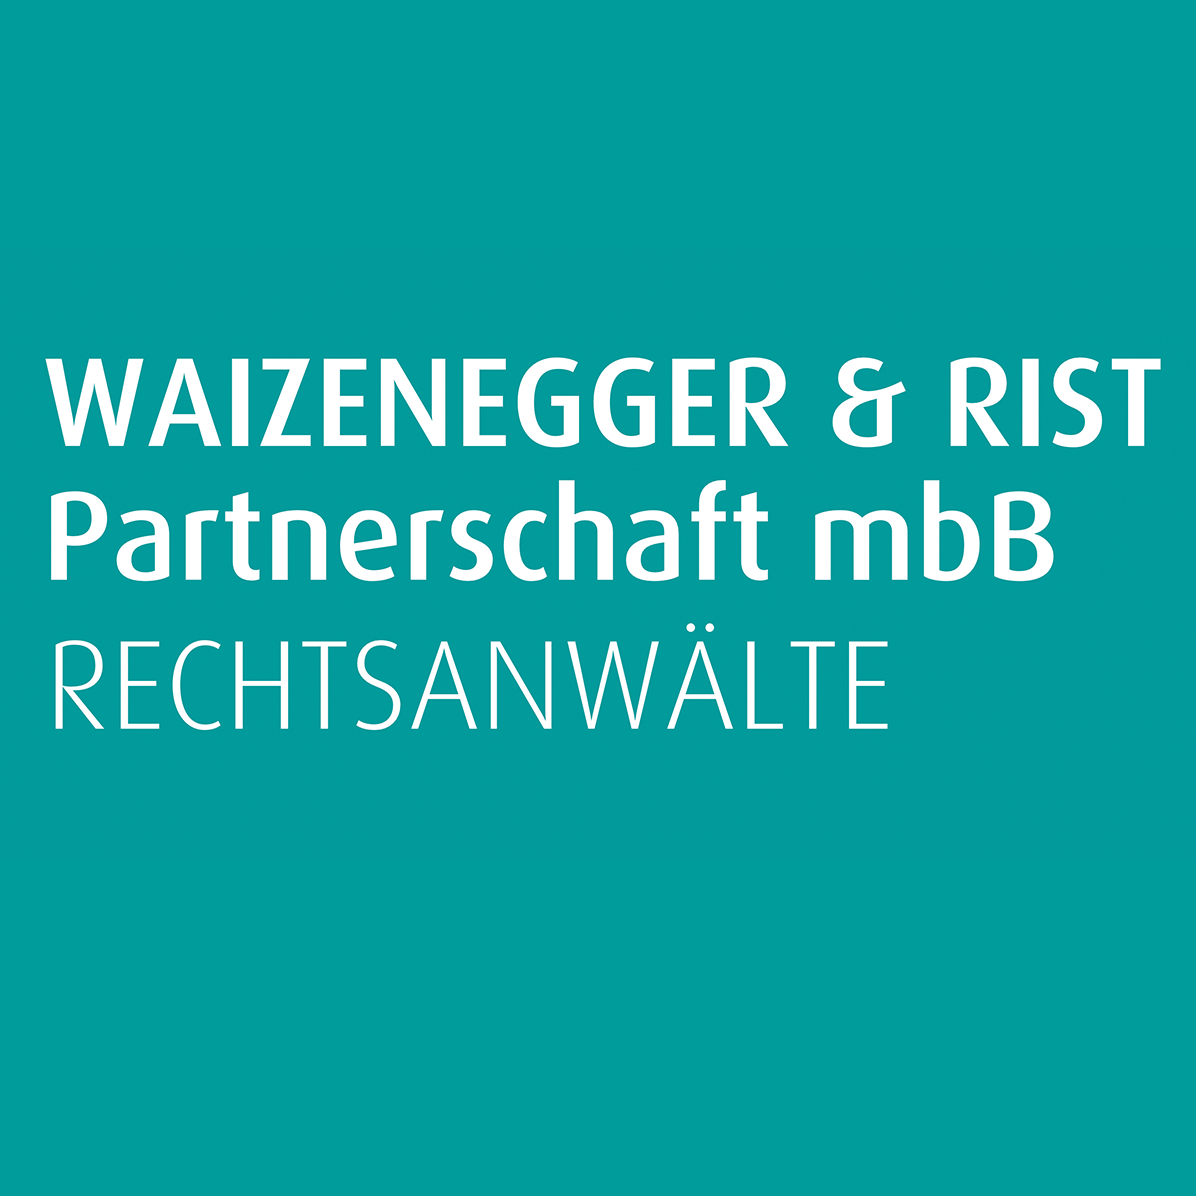 Waizenegger & Rist Partnerschaft Mbb Rechtsanwälte